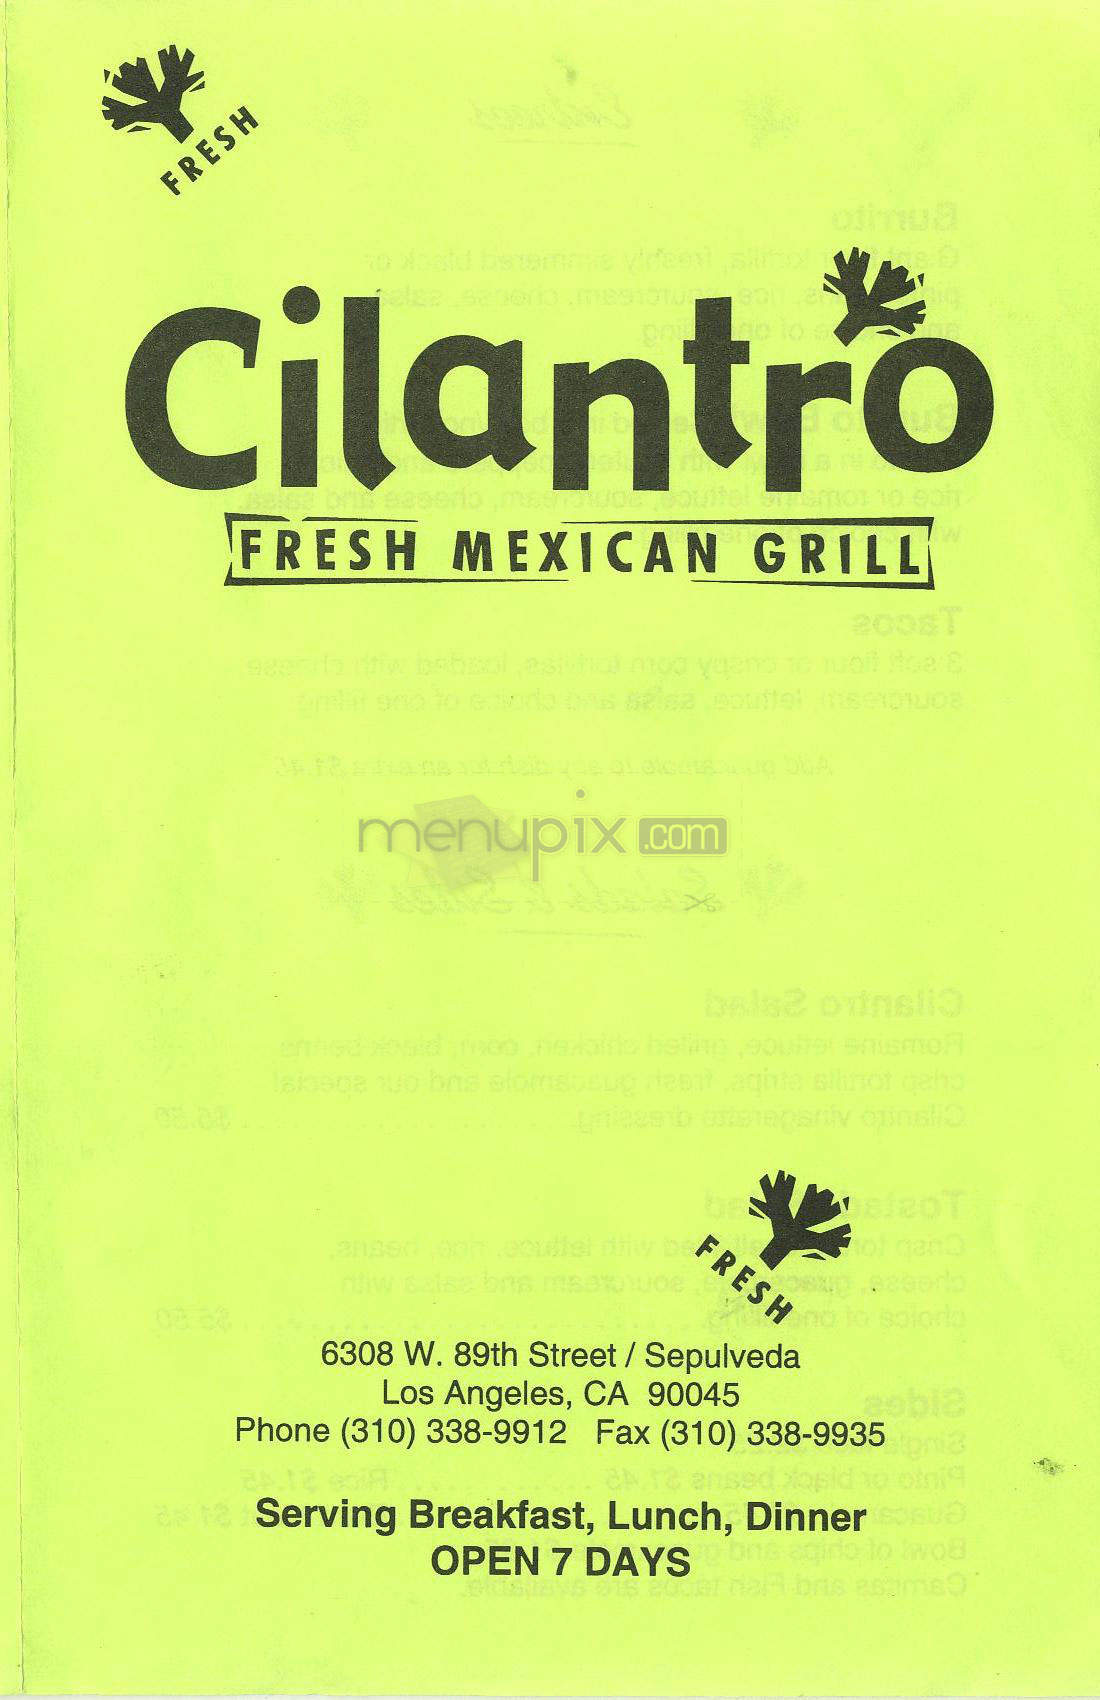 /204301/Cilantro-Fresh-Mexican-Grill-Los-Angeles-CA - Los Angeles, CA